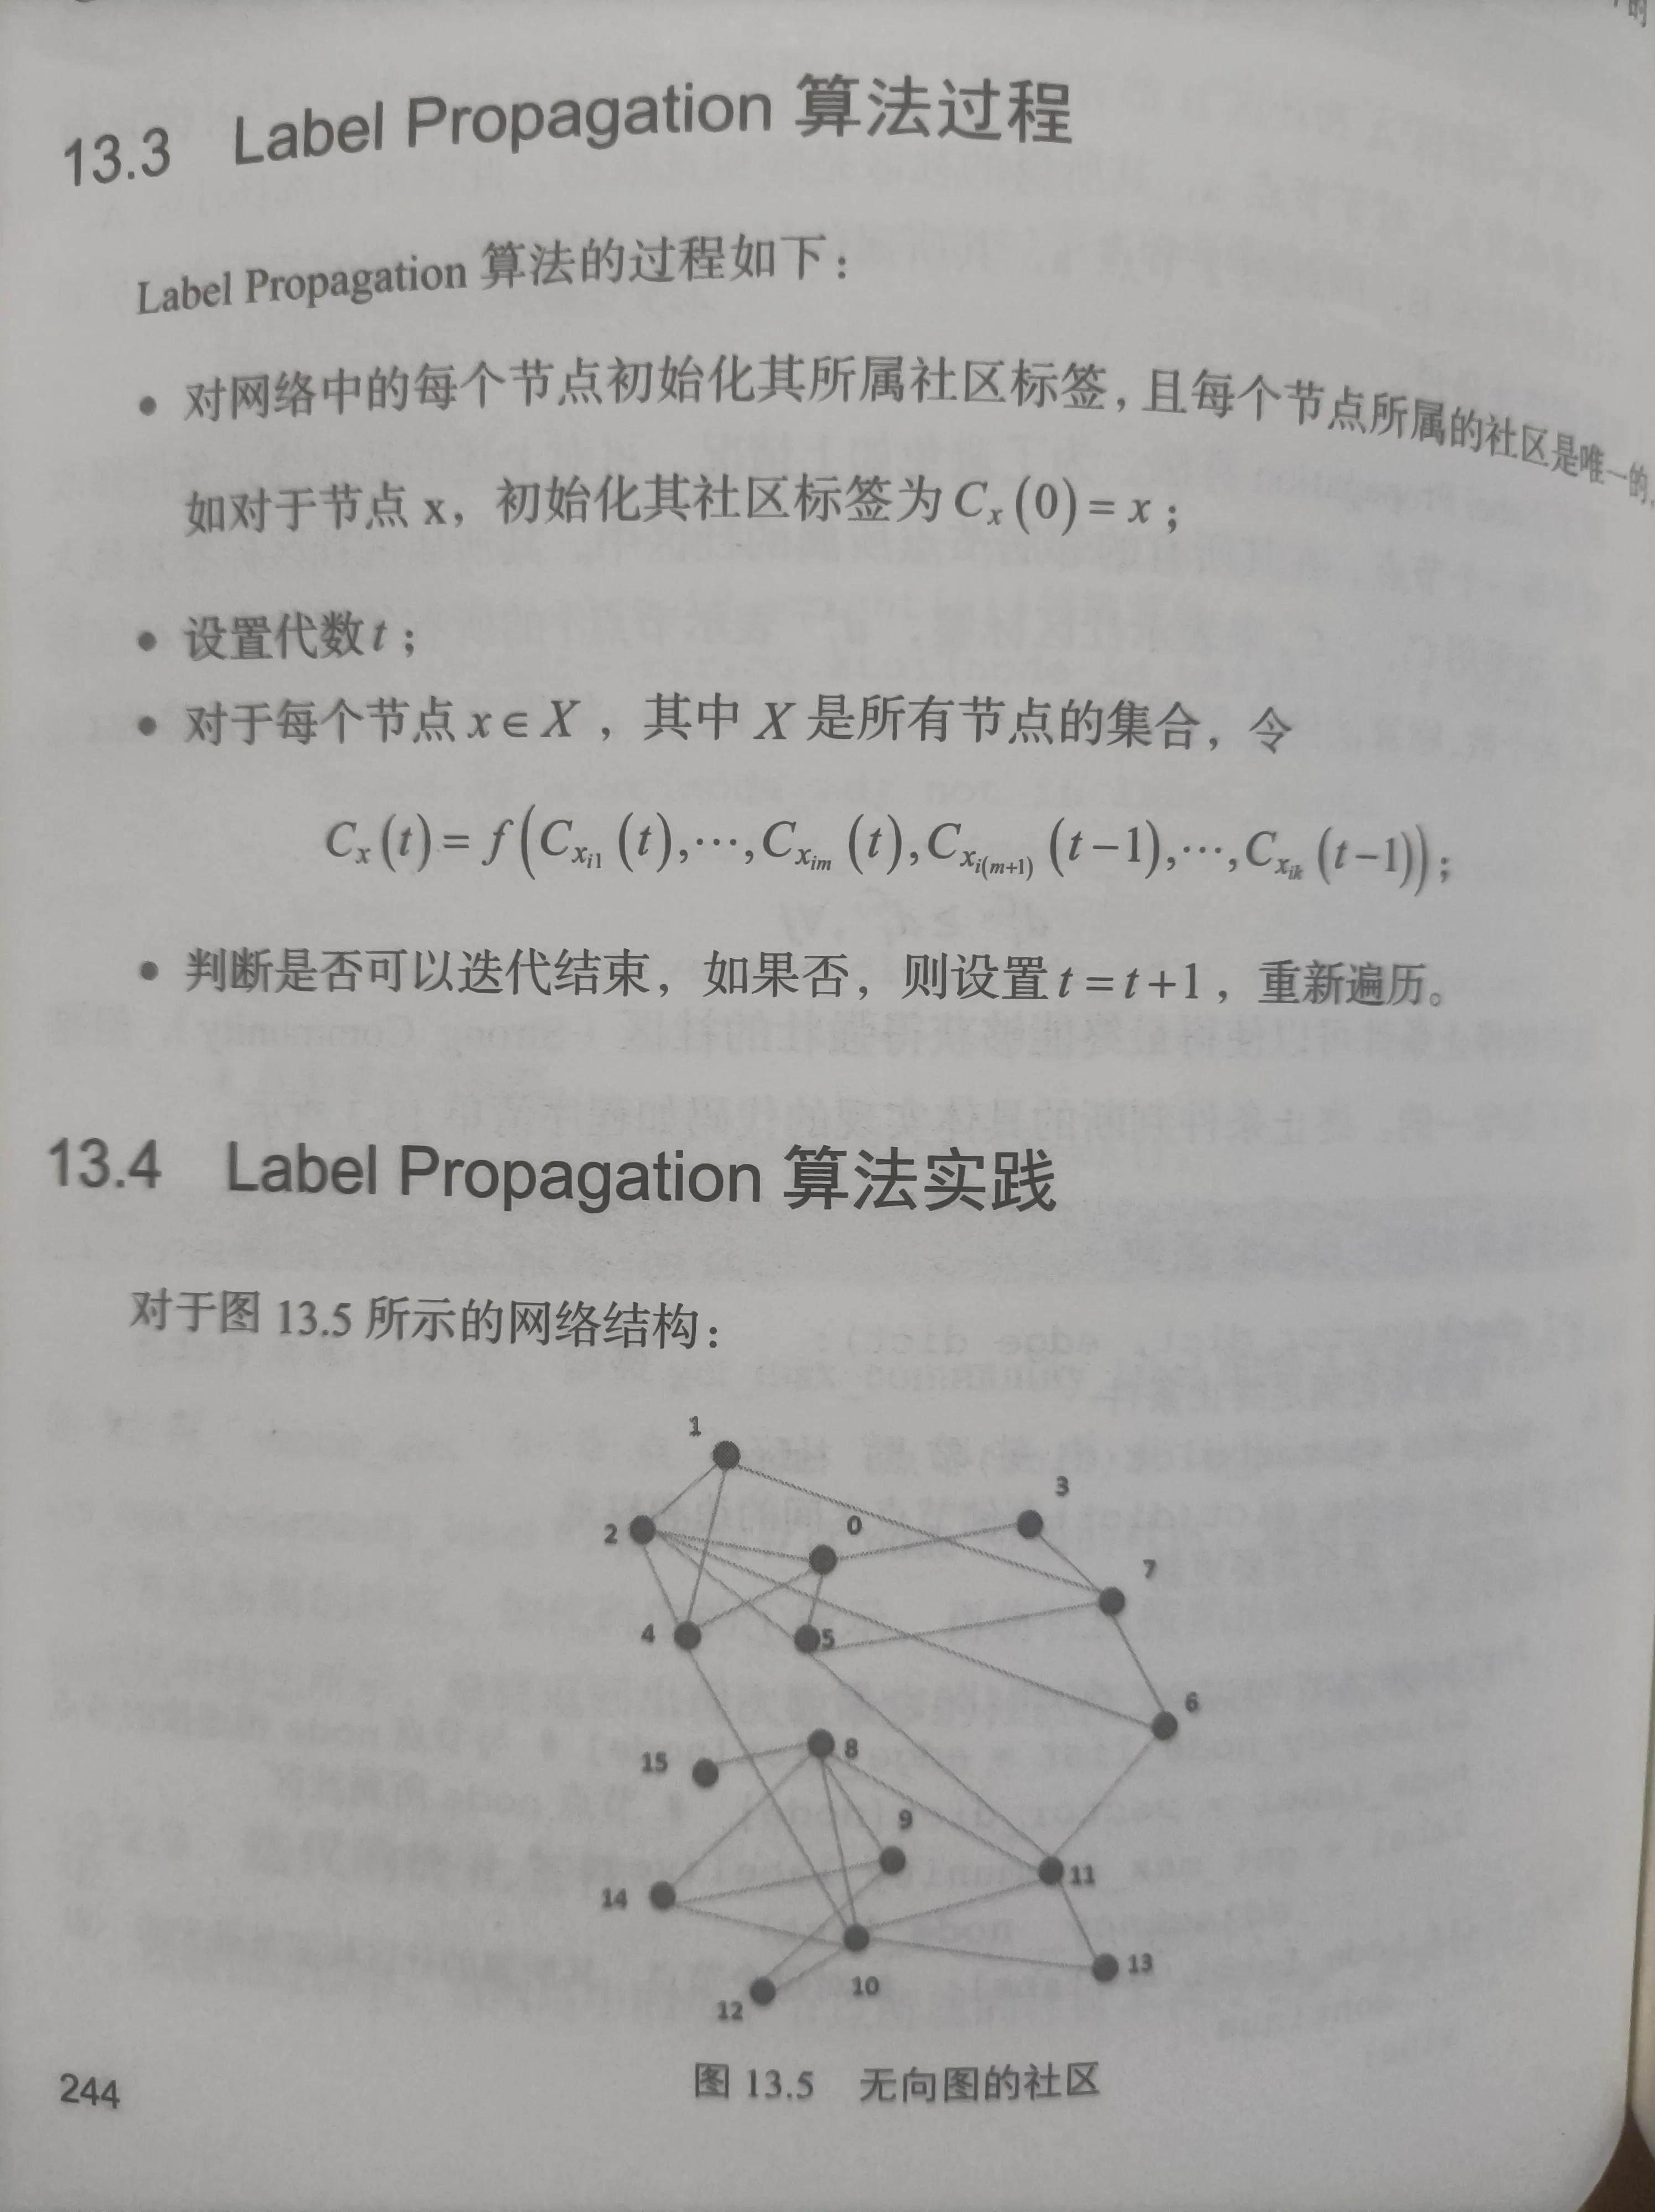 知识图谱–标签算法(Label Propagation)